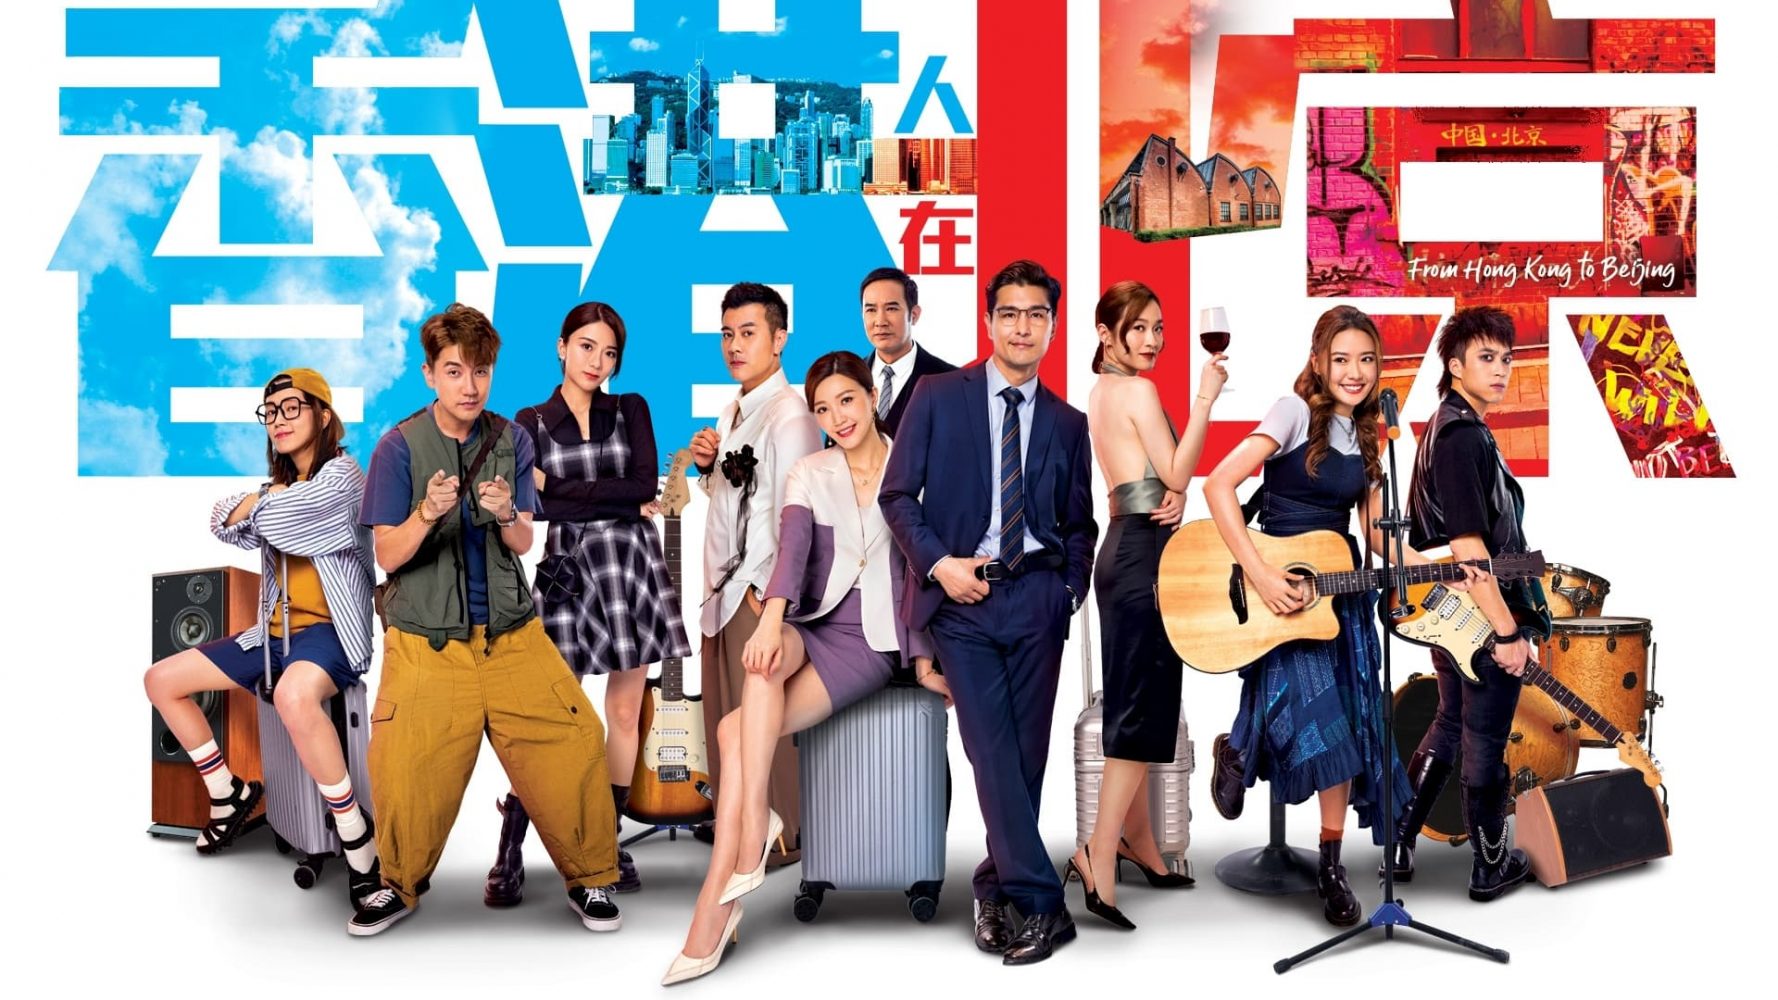 Phim bộ Hồng Kông mới nhất 2023: Người Hồng Kông ở Bắc Kinh – From Hong Kong to Beijing (2023)